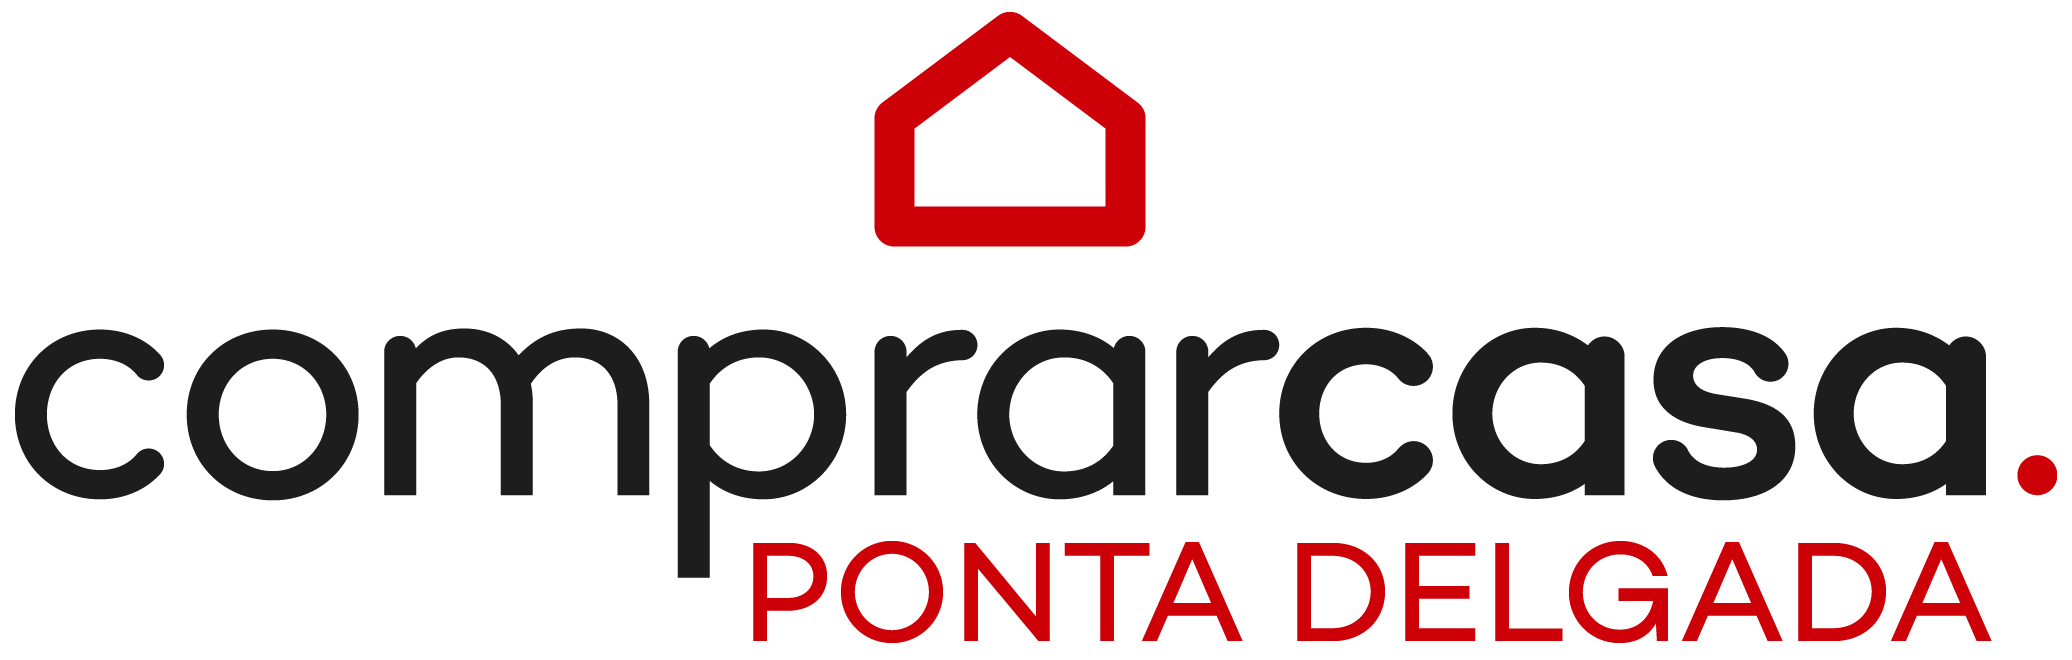 ComprarCasa Ponta Delgada - Guia Imobiliário